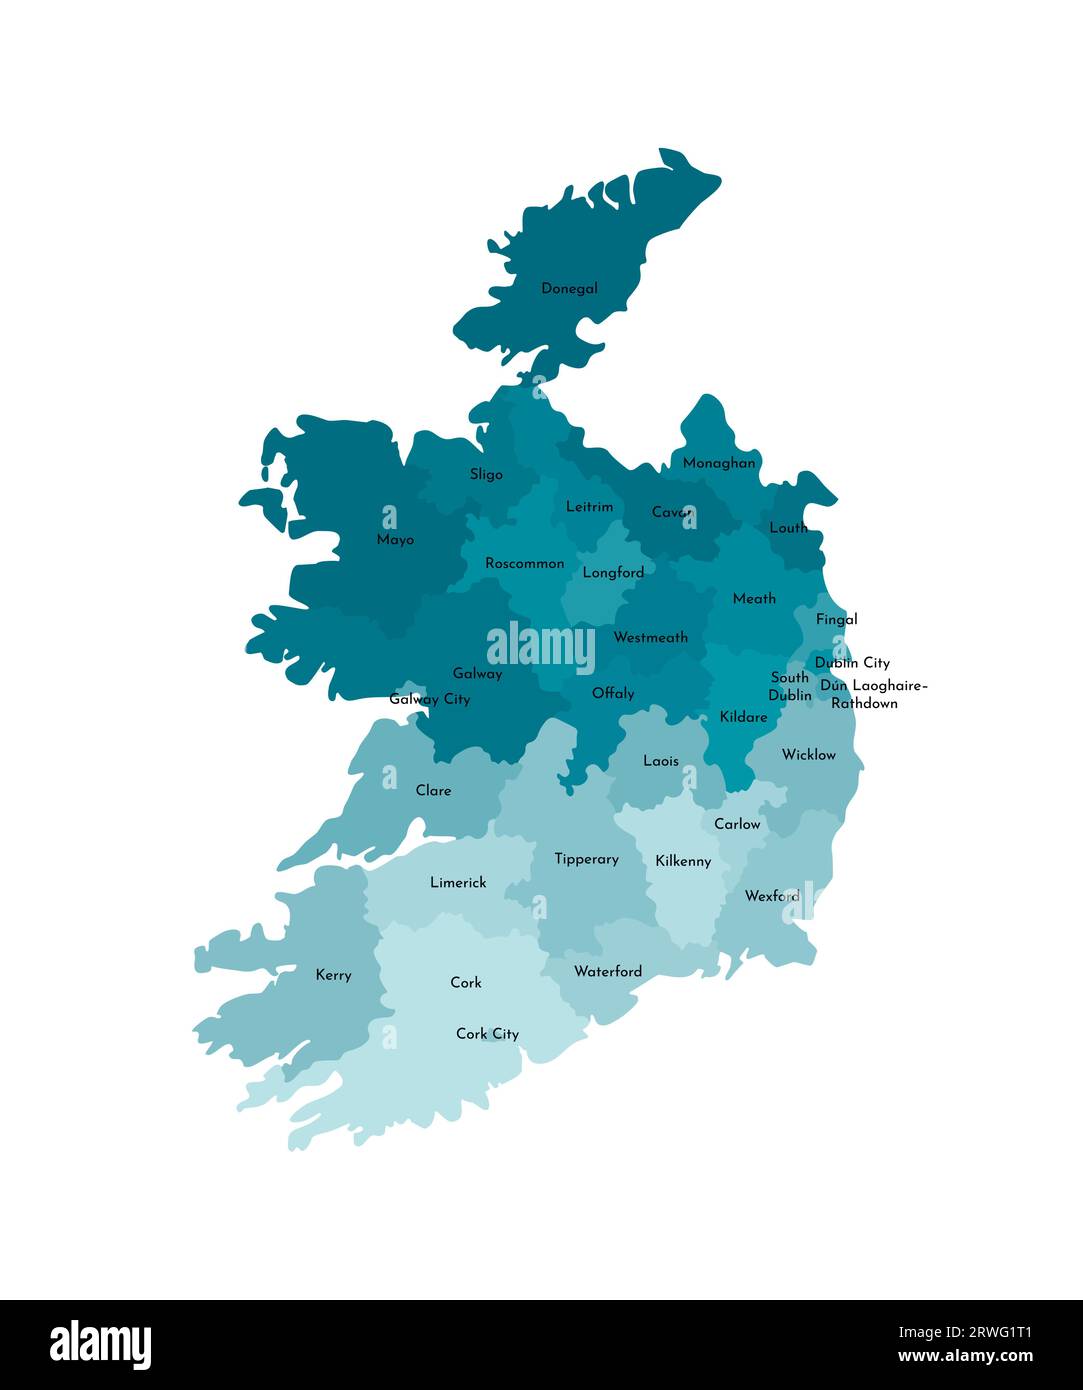 Vektorisolierte Illustration einer vereinfachten Verwaltungskarte der Republik Irland. Grenzen und Namen der Regionen. Farbenfrohe blaue Khaki-Silhouette Stock Vektor